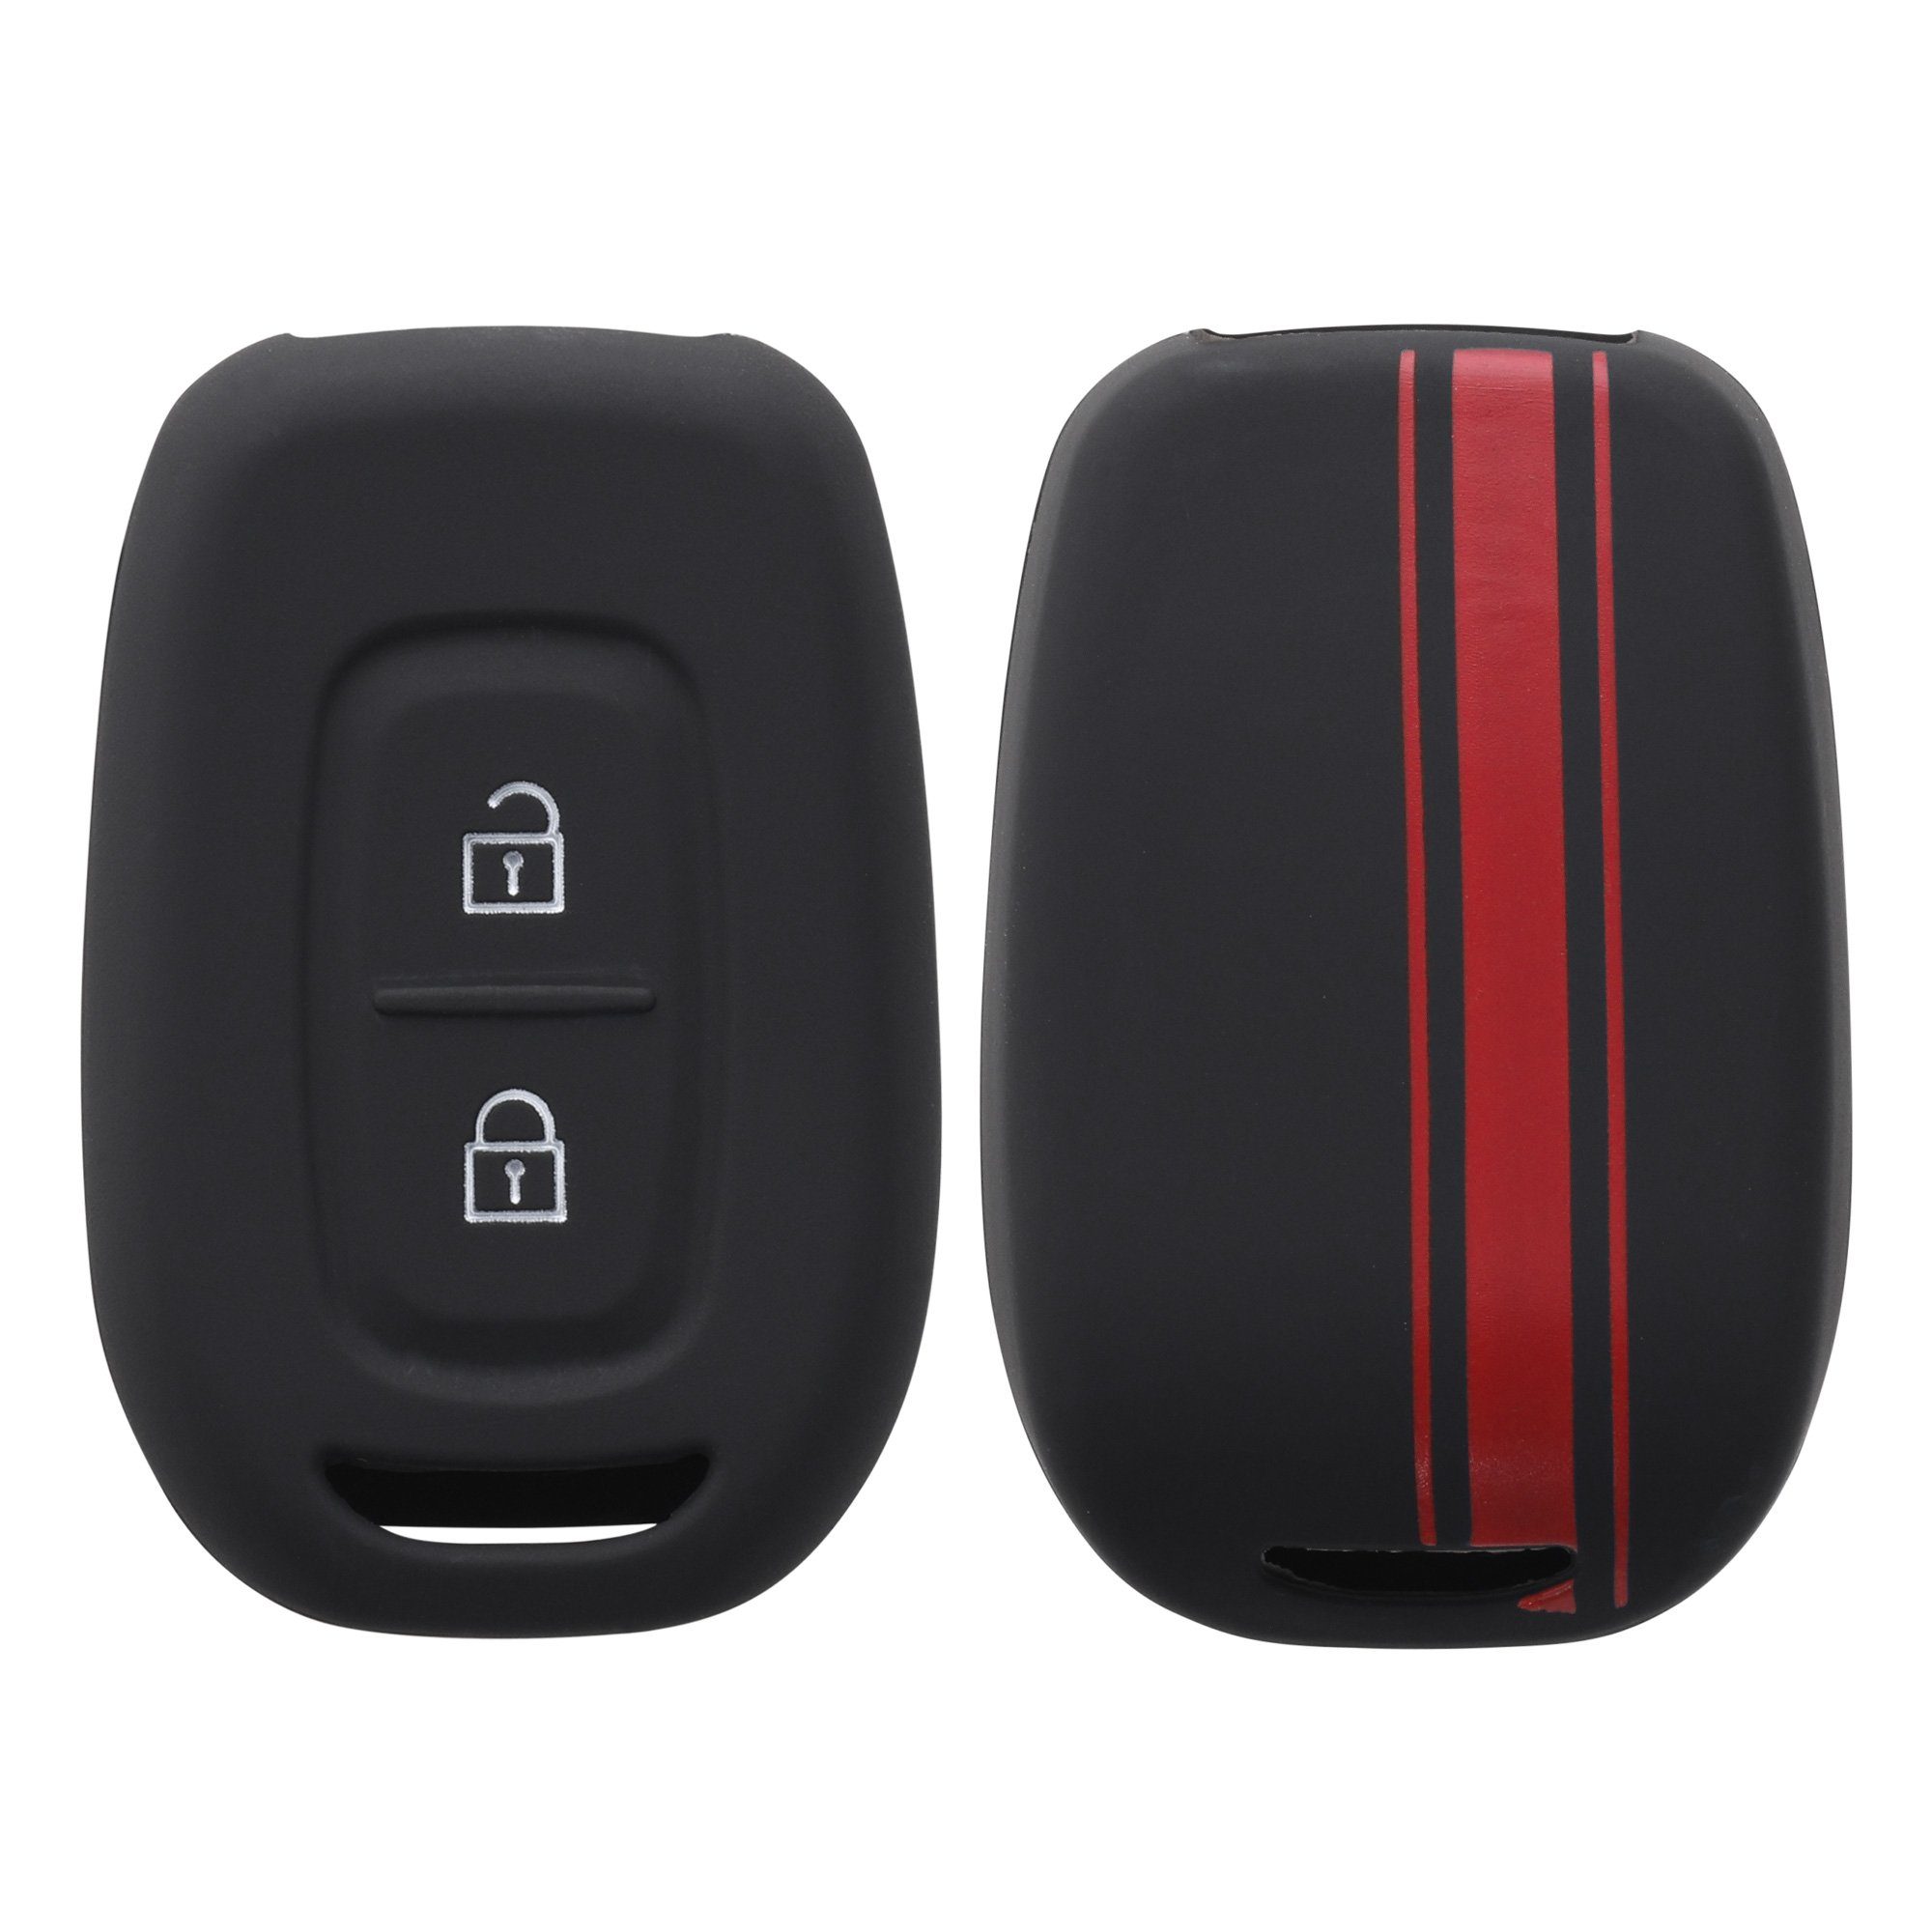 Dacia, Hülle Cover Schlüsselhülle für kwmobile Schlüsseltasche Case Renault Autoschlüssel Schlüssel Rot